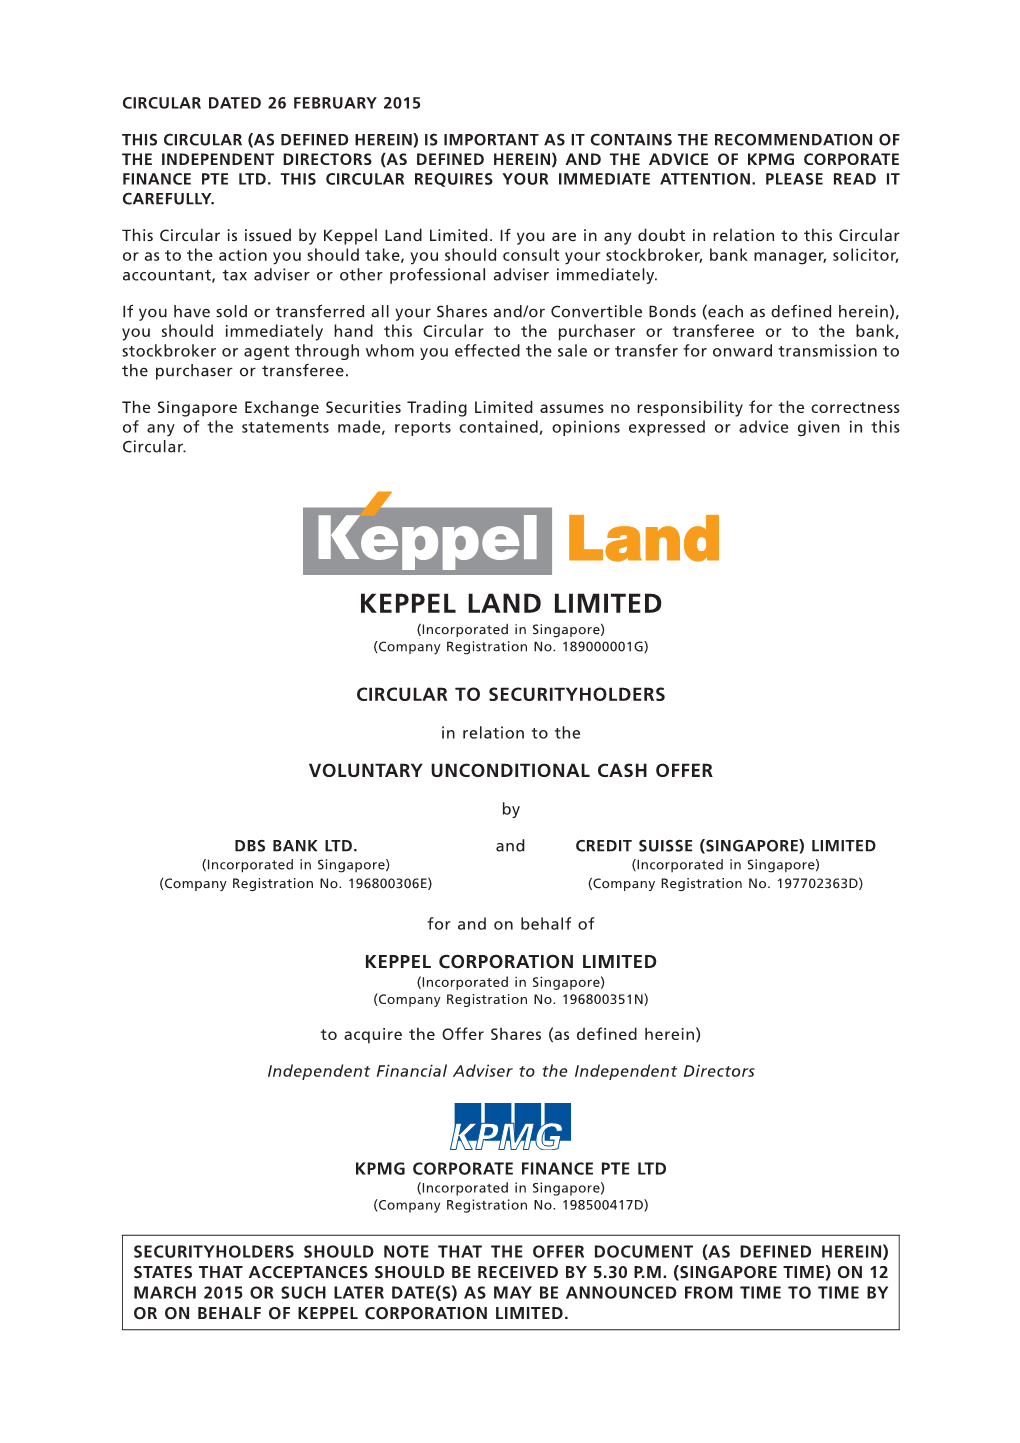 Keppel Land Limited